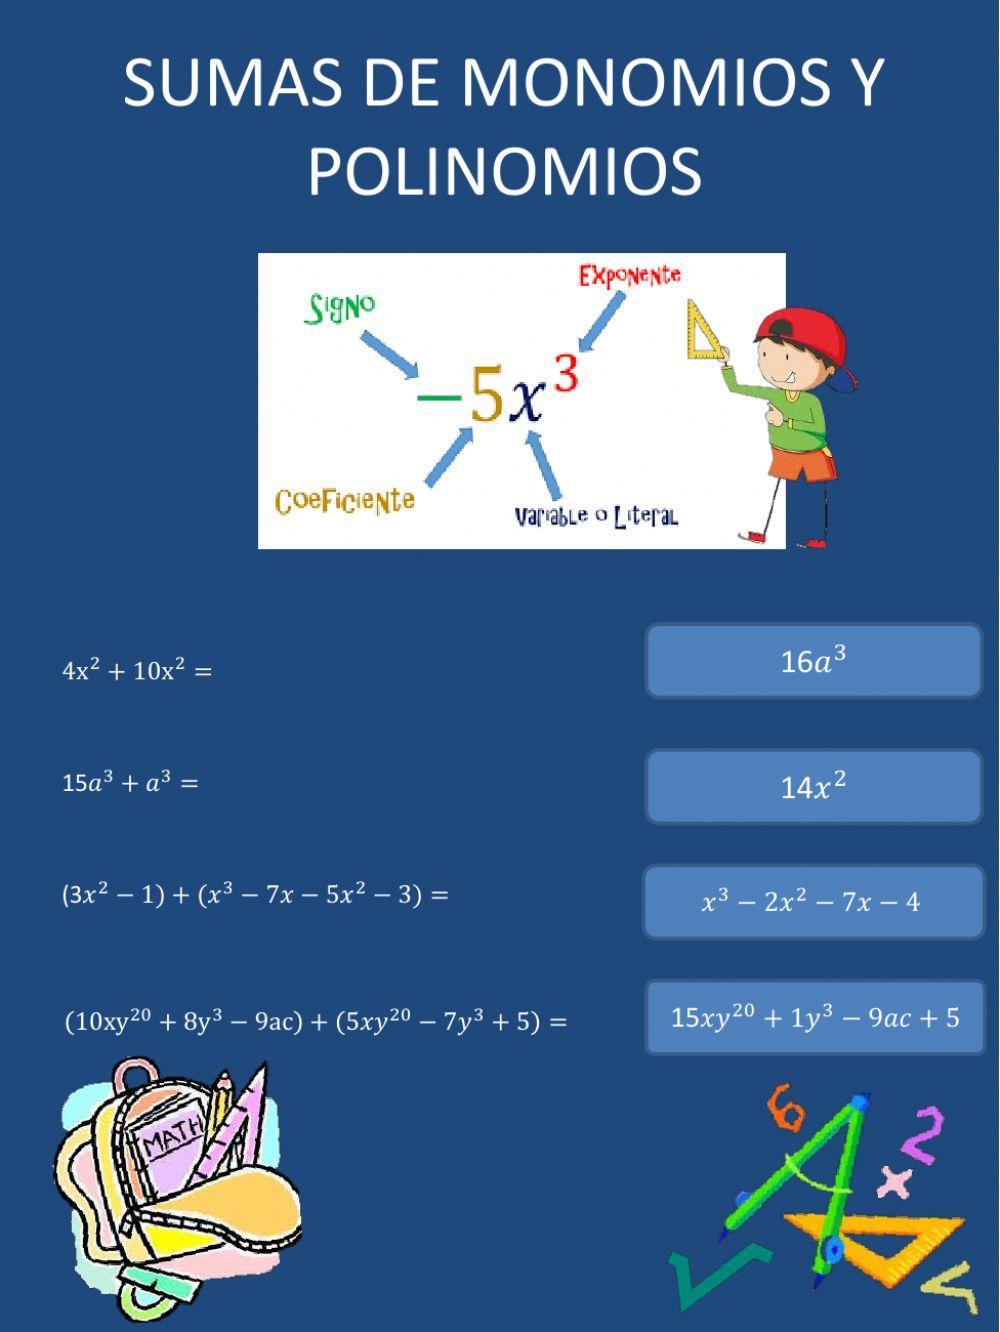 Sumas de monomios y polinomios